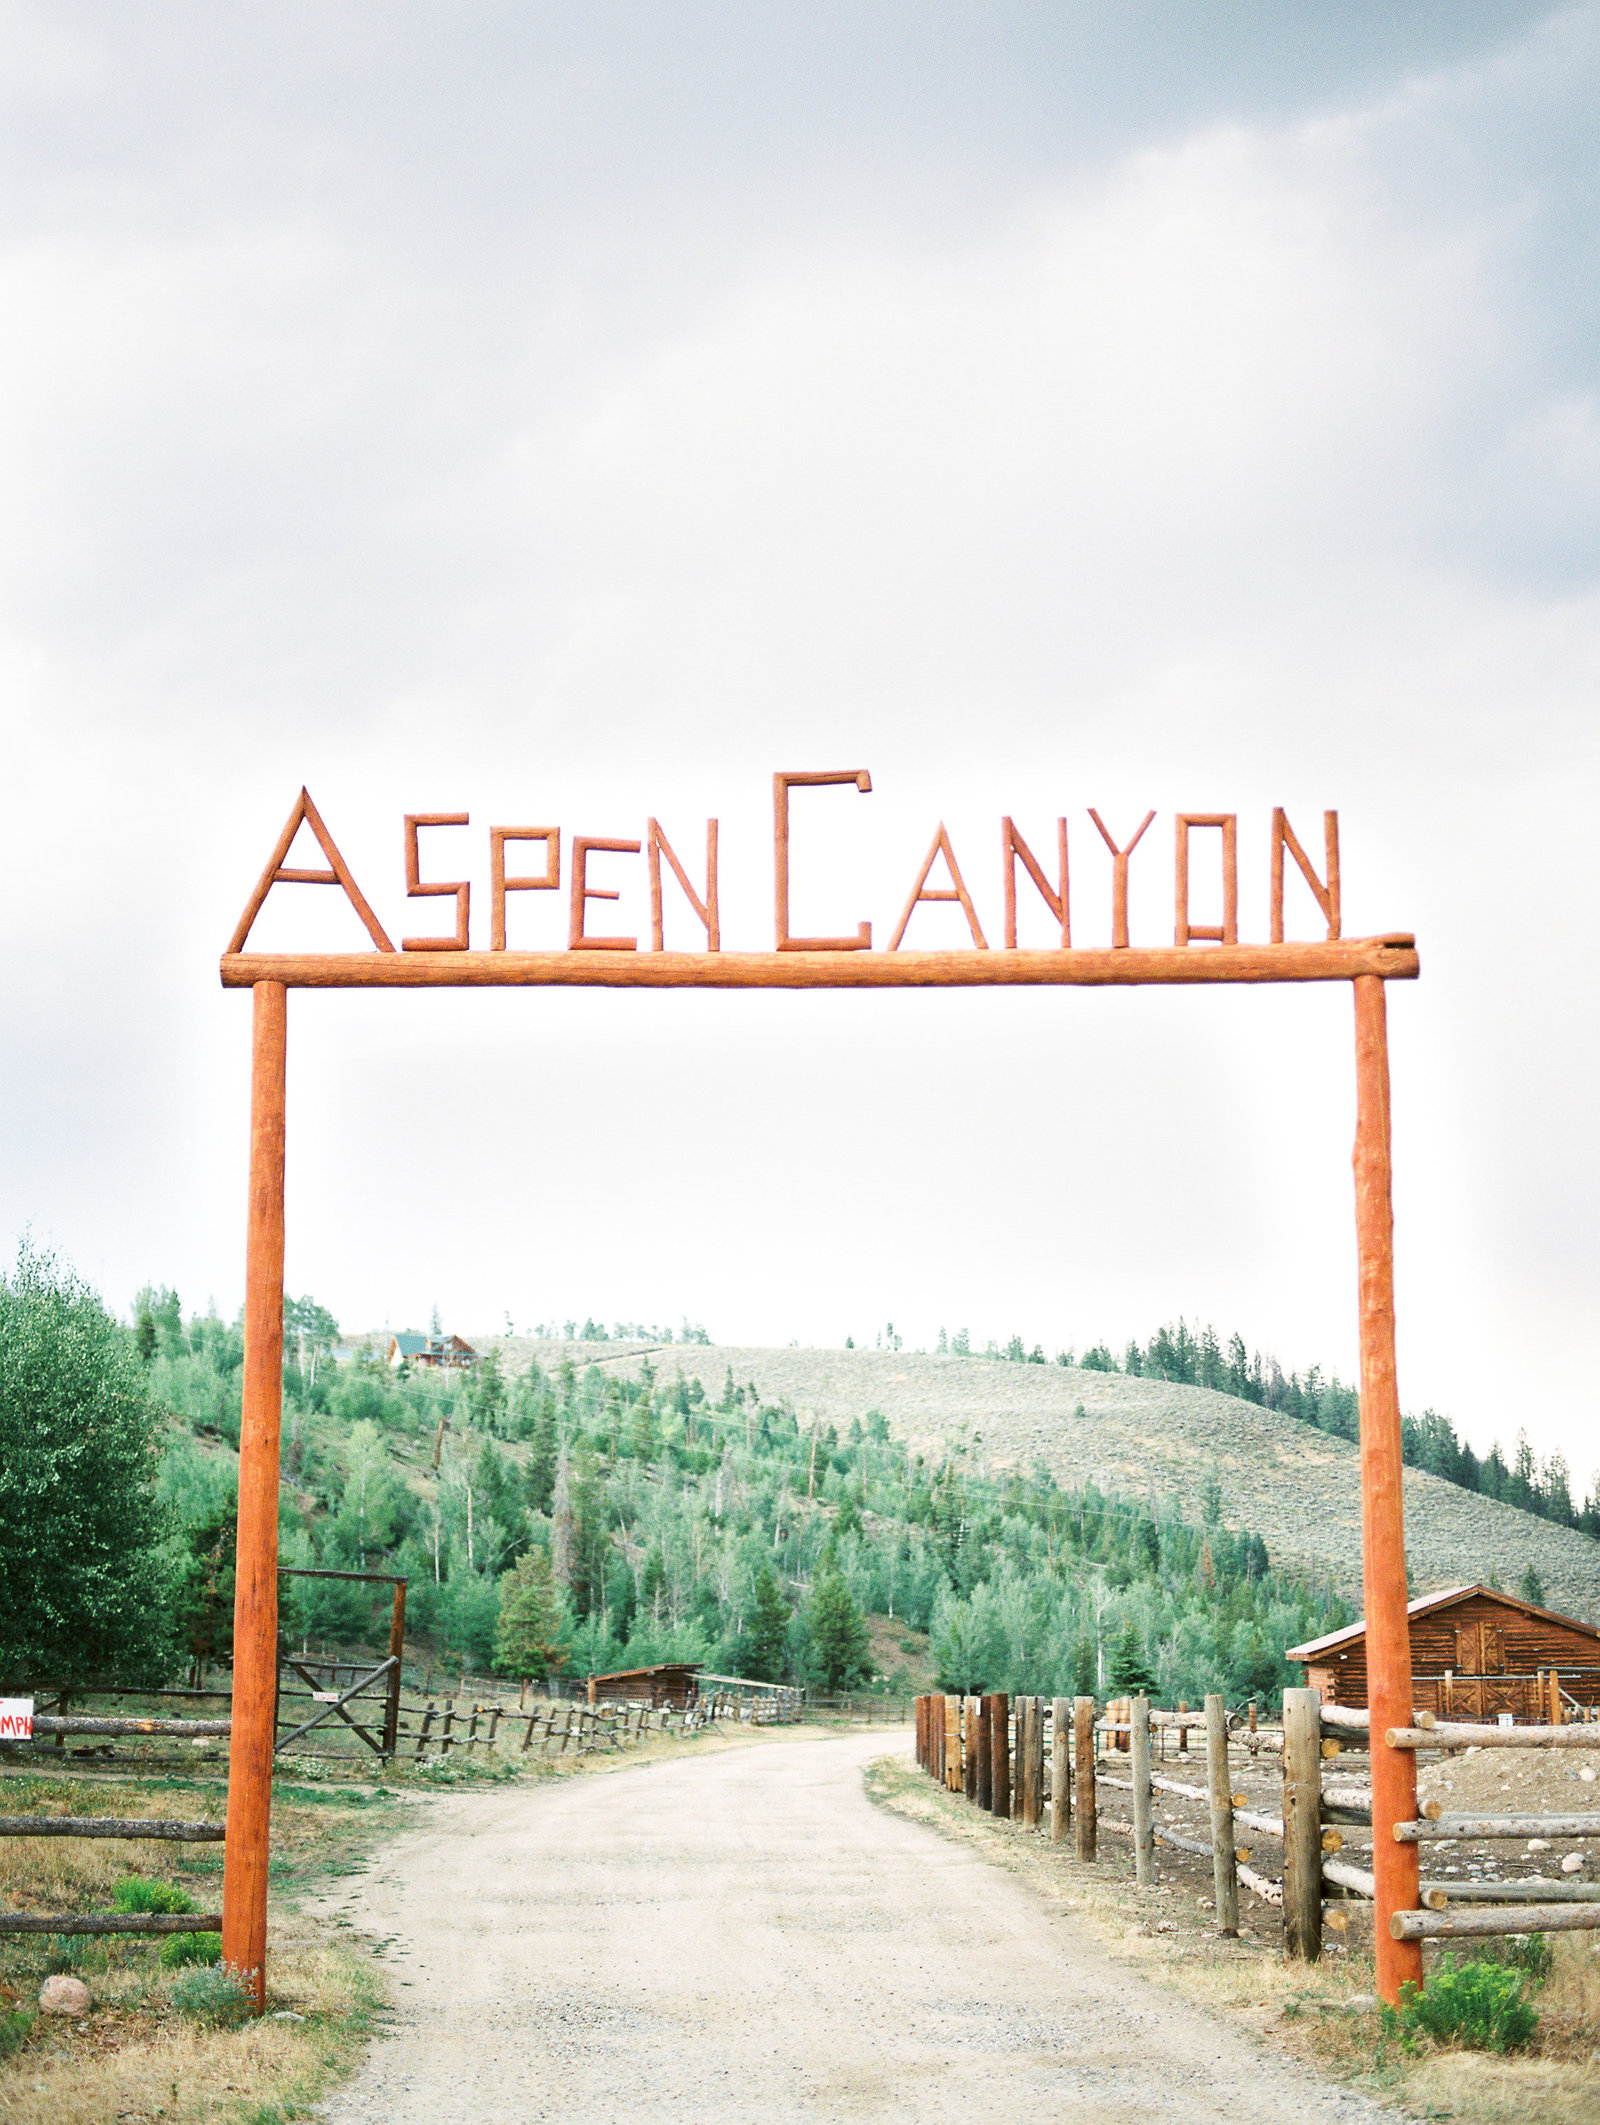 Rachel-Carter-Photography-Aspen-Canyon-Ranch-Farm-Lodge-Wedding-4